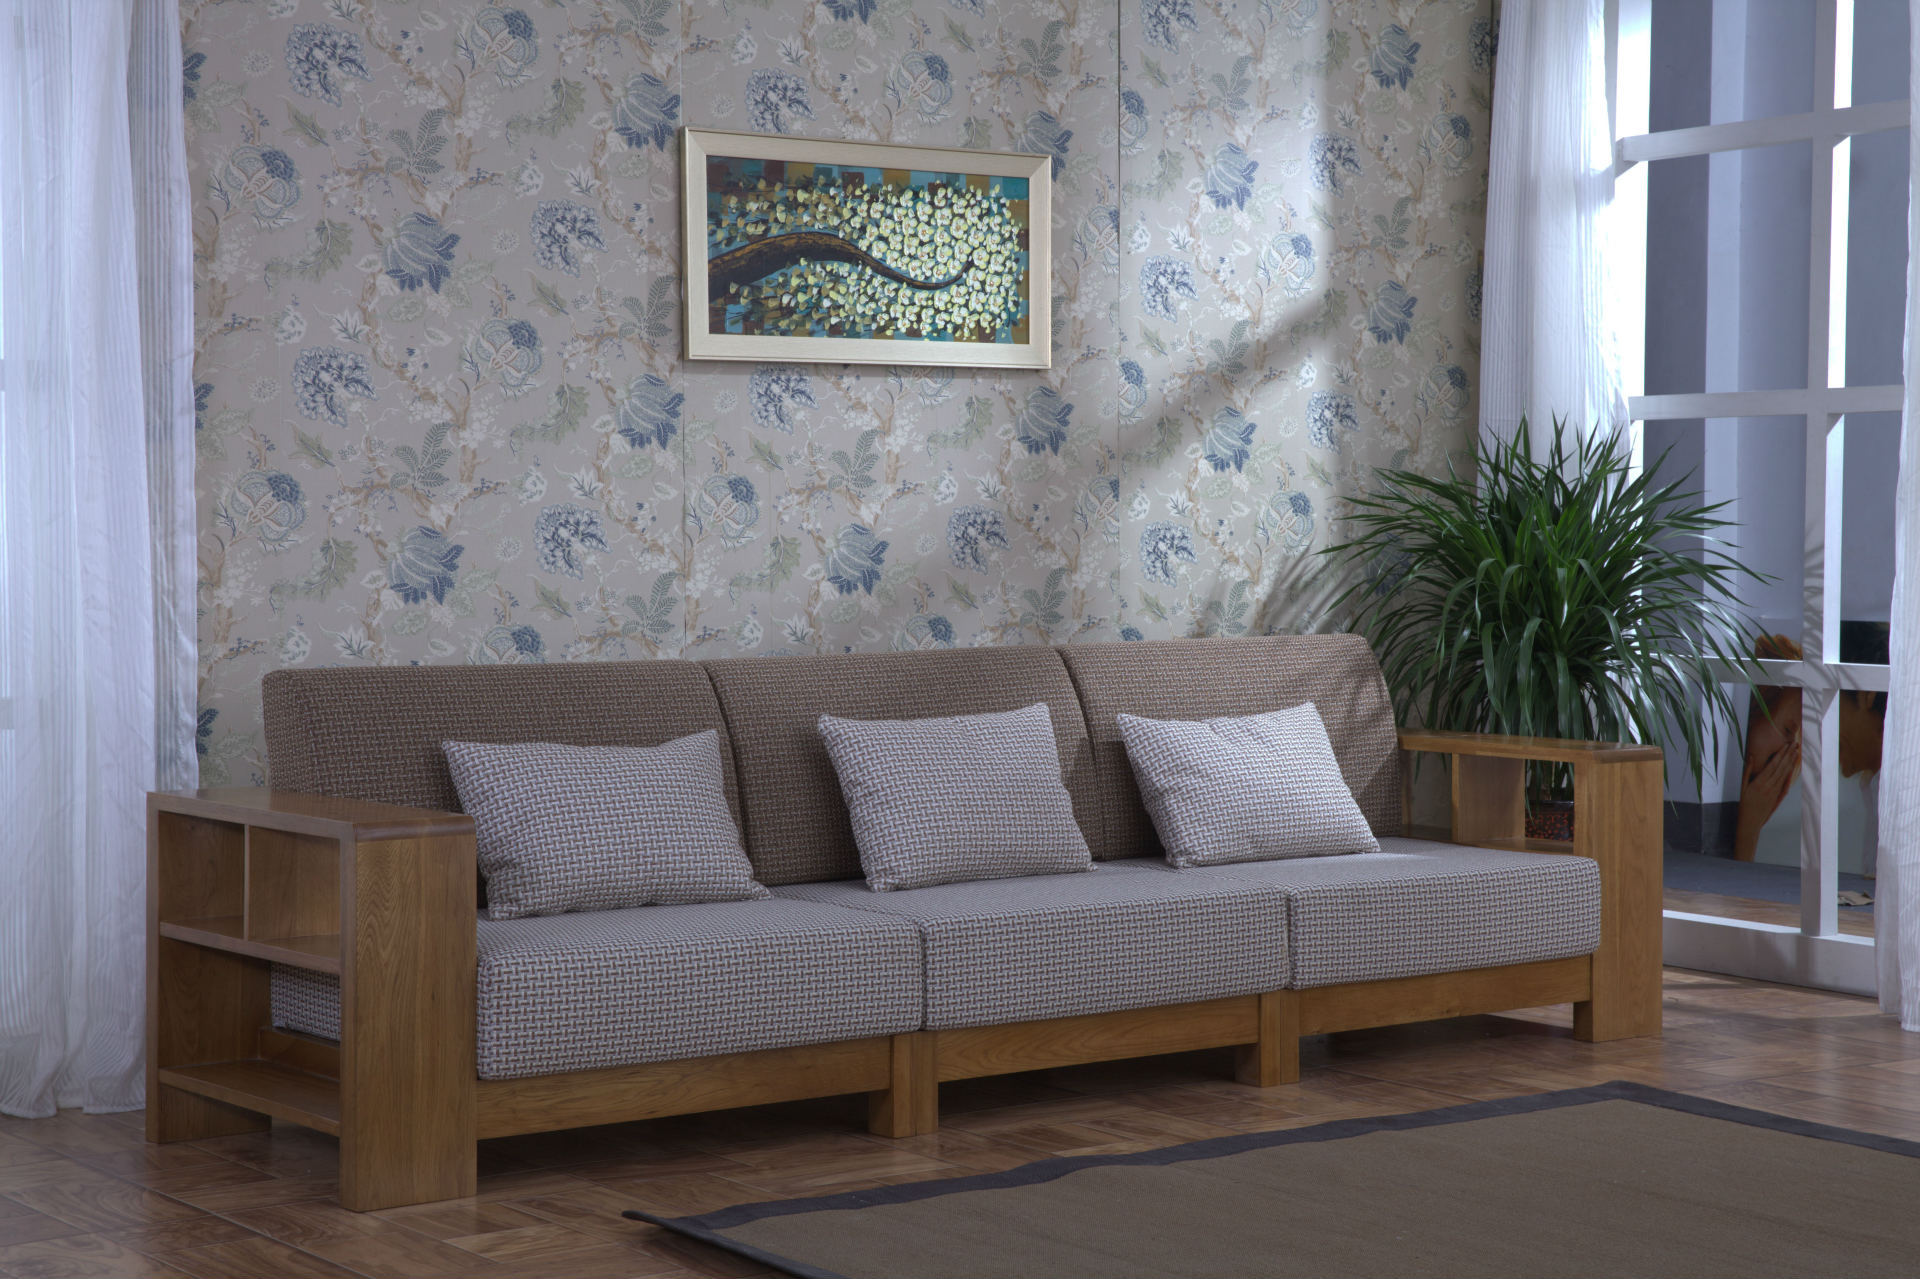 泽润木业 客厅拐角实木沙发 100%纯白橡木茶几组合沙发